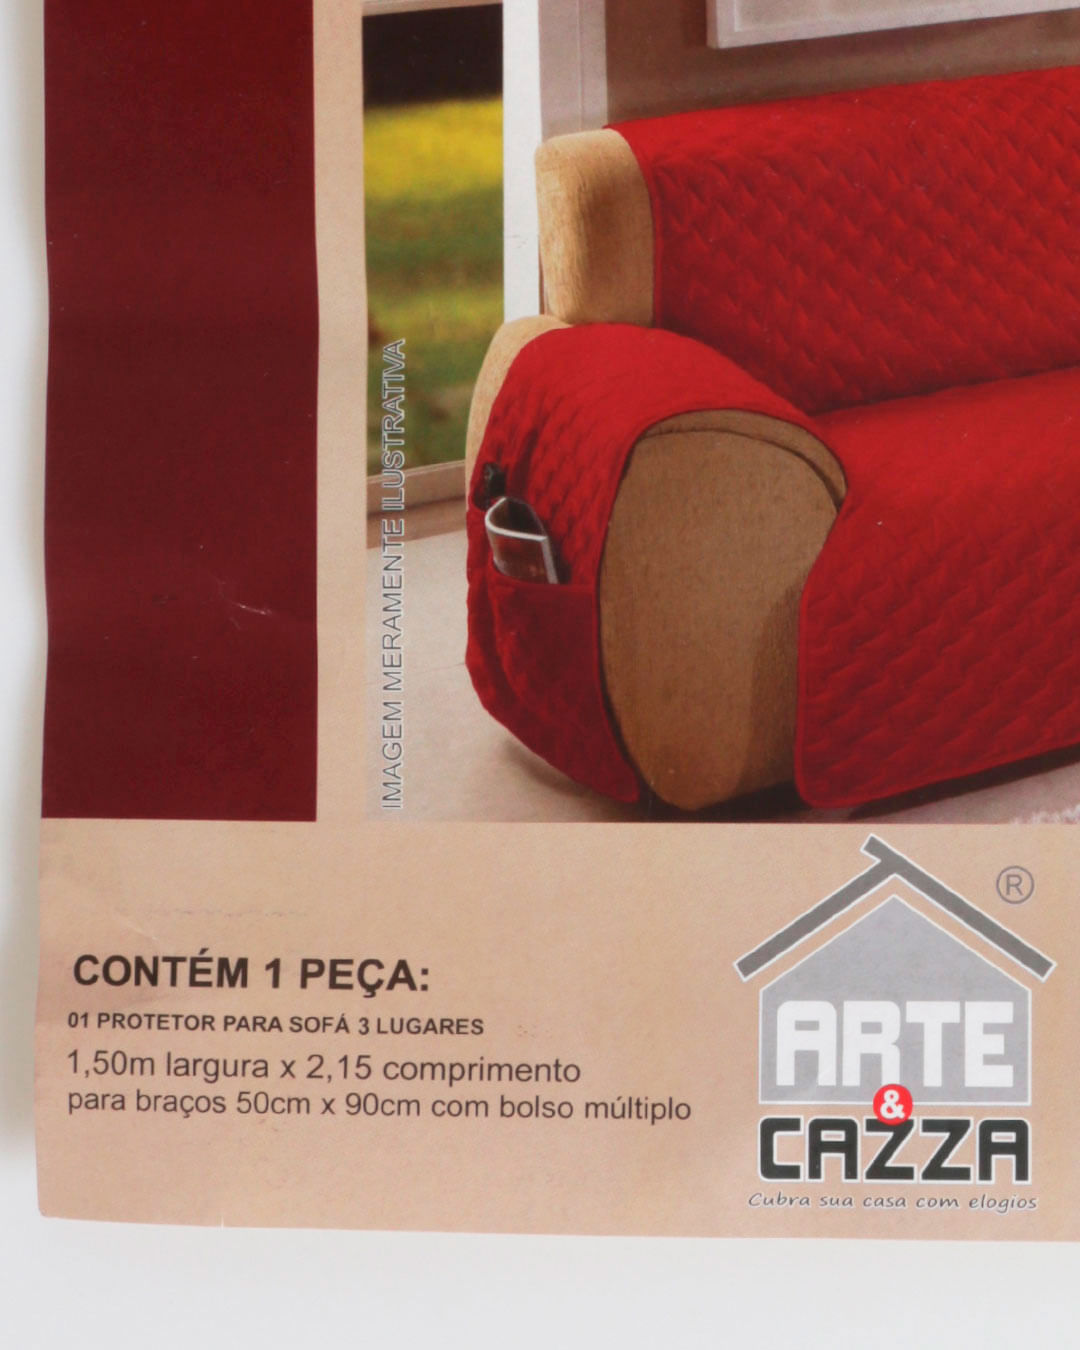 Protetor-Para-Sofa-3-Lugares-Arte-e-Cazza-Cinza